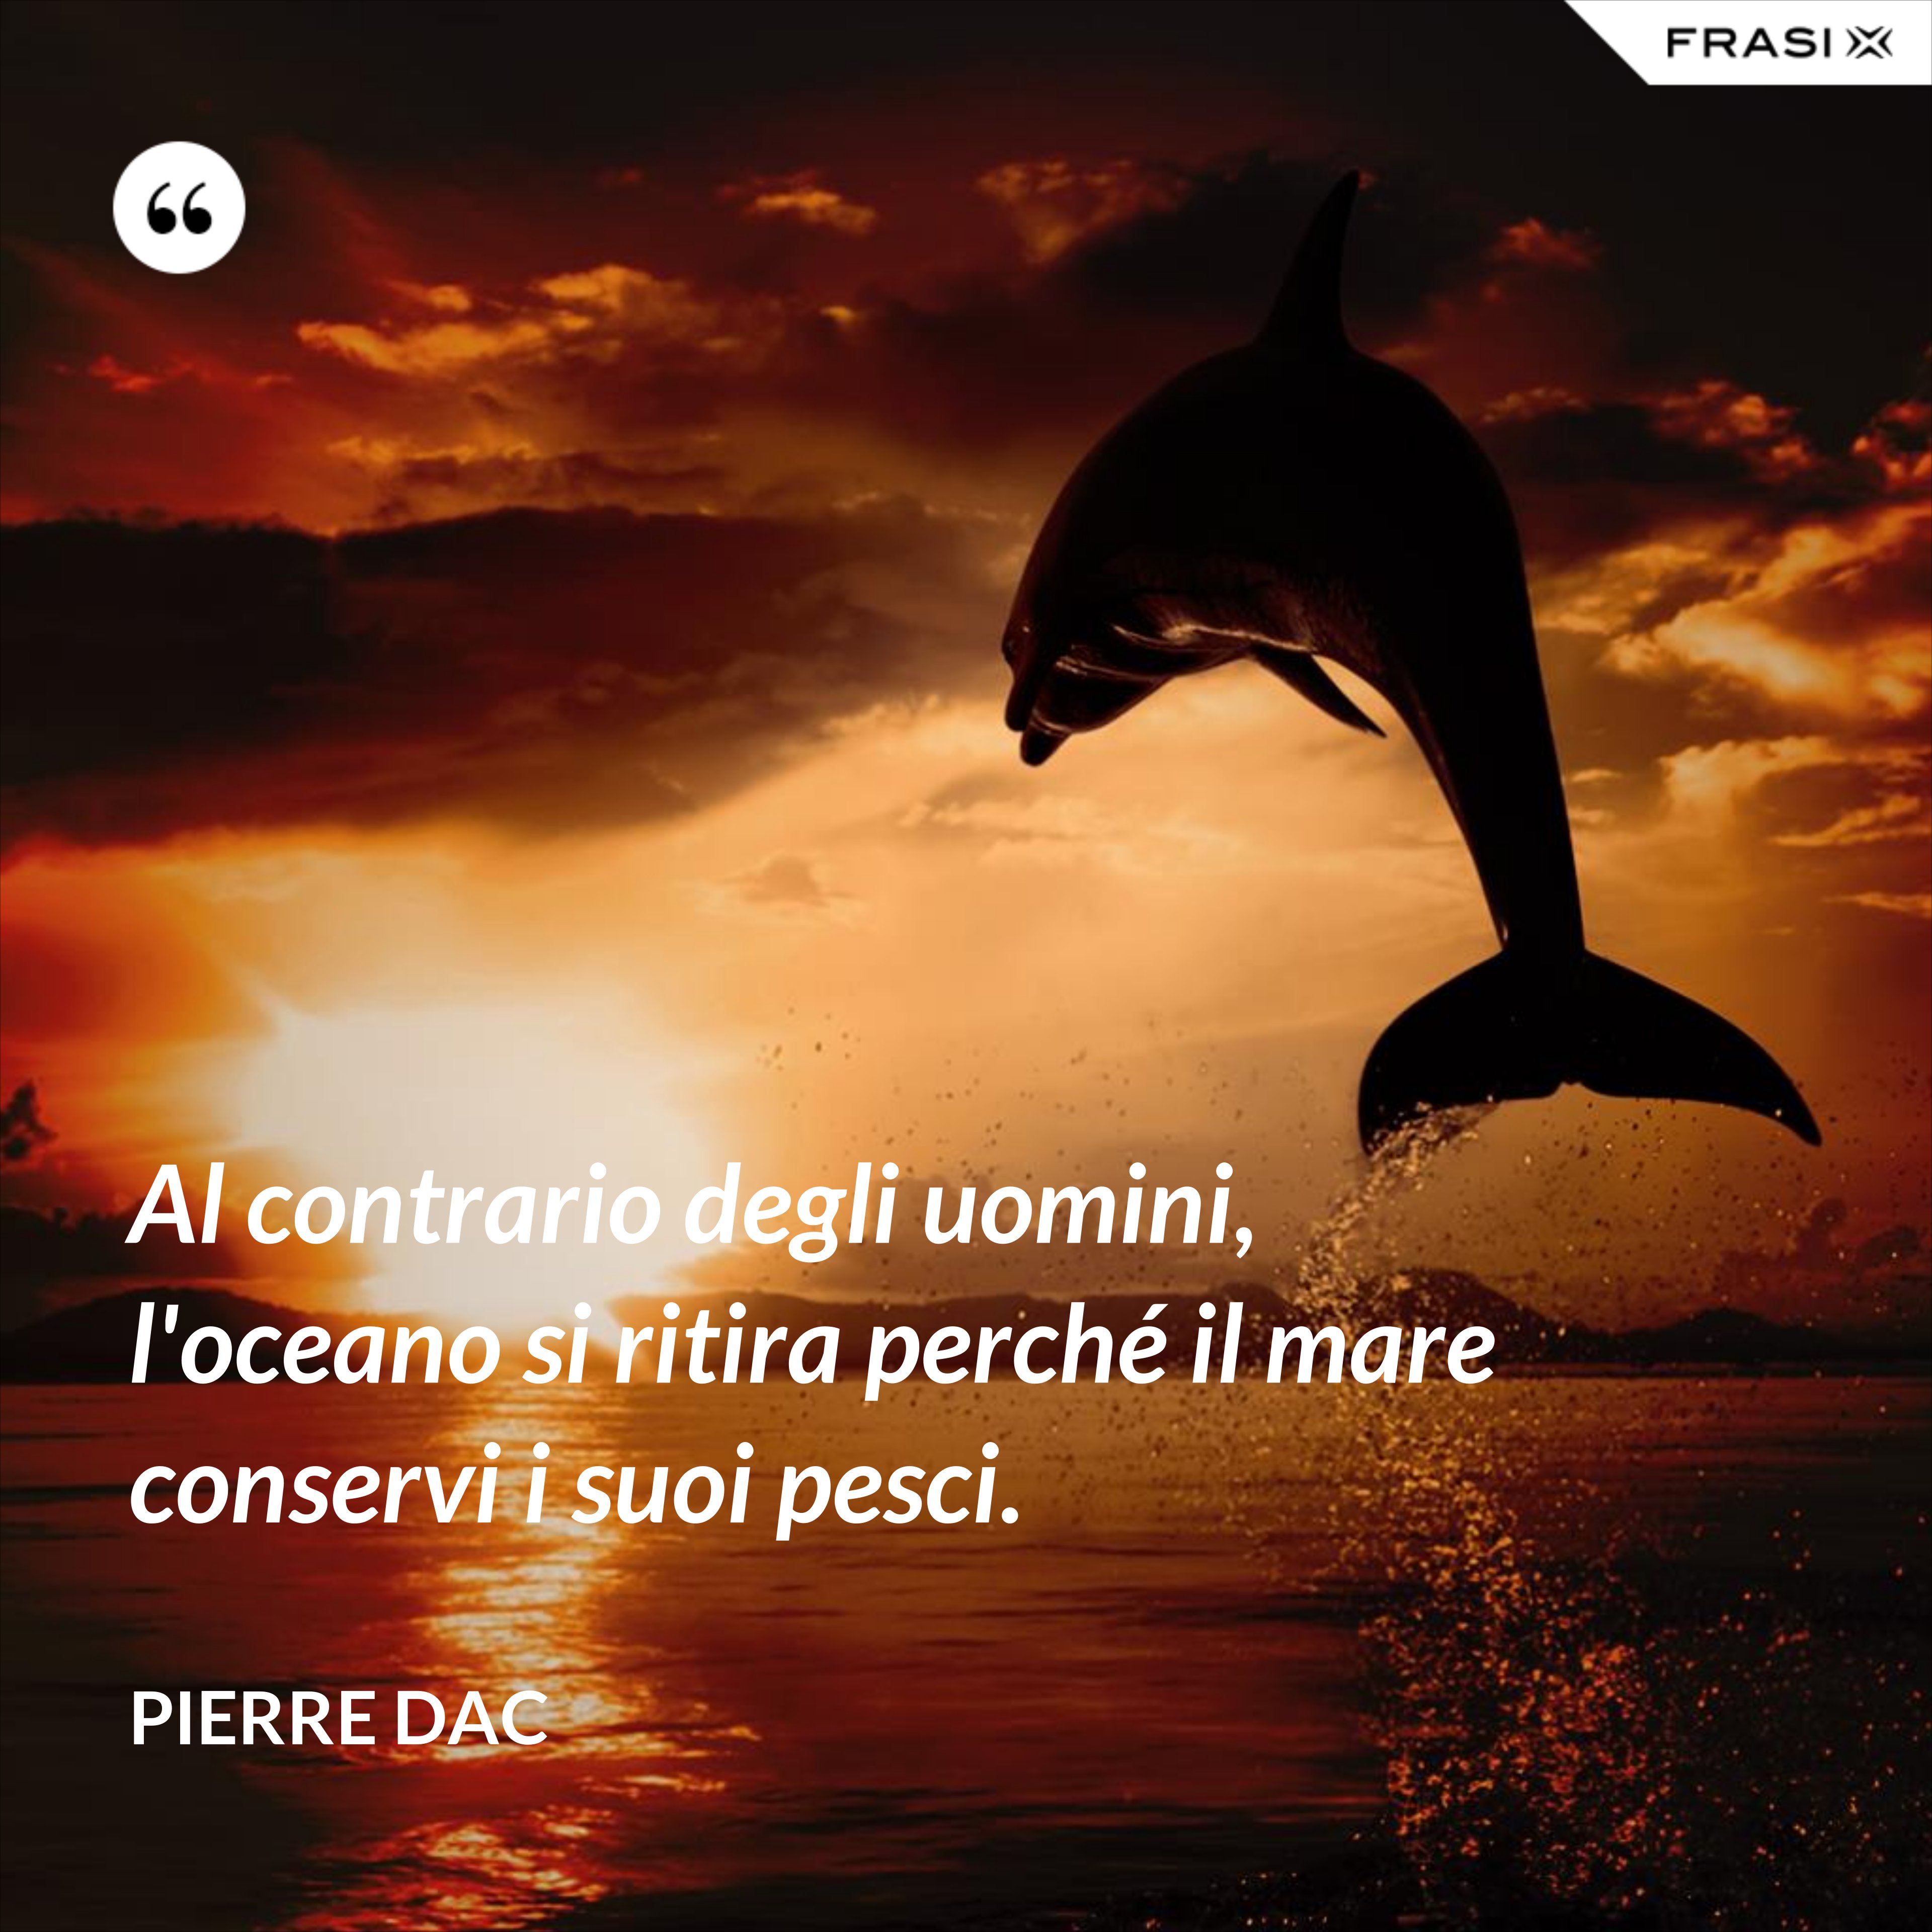 Al contrario degli uomini, l'oceano si ritira perché il mare conservi i suoi pesci. - Pierre Dac